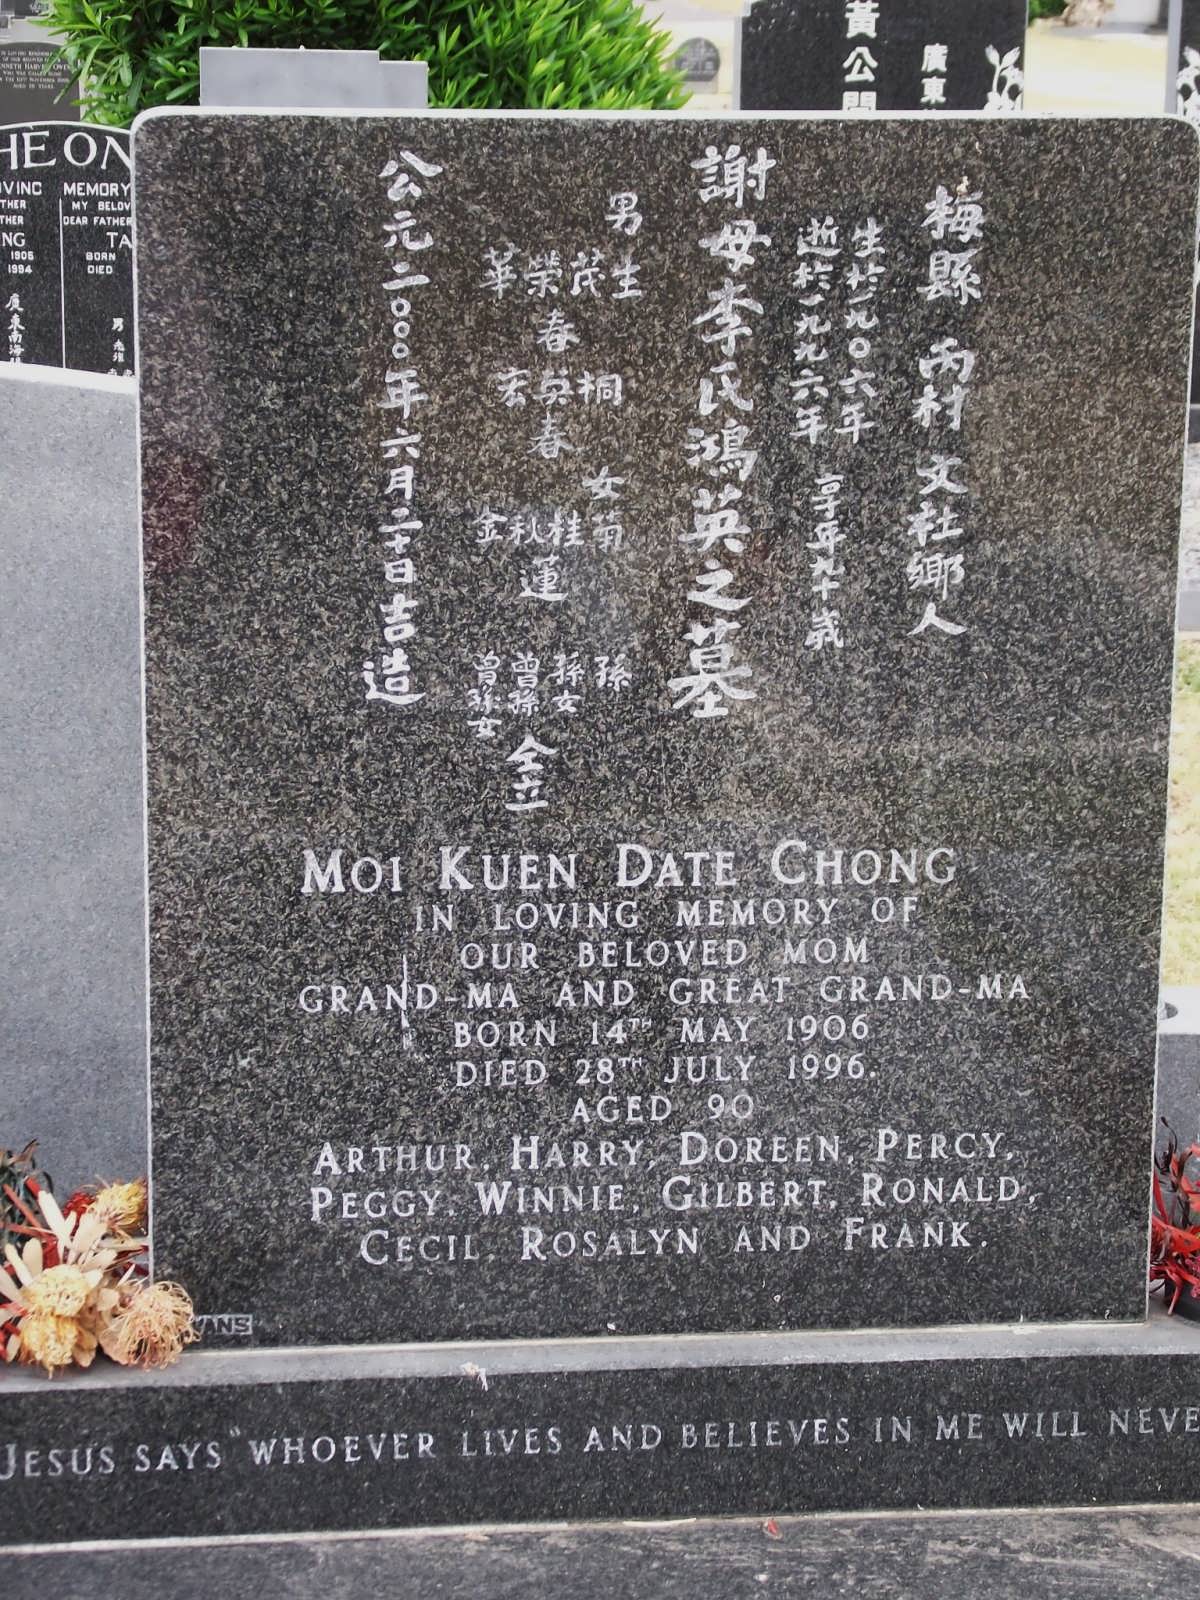 DATE CHONG Moi Kuen 1906-1996